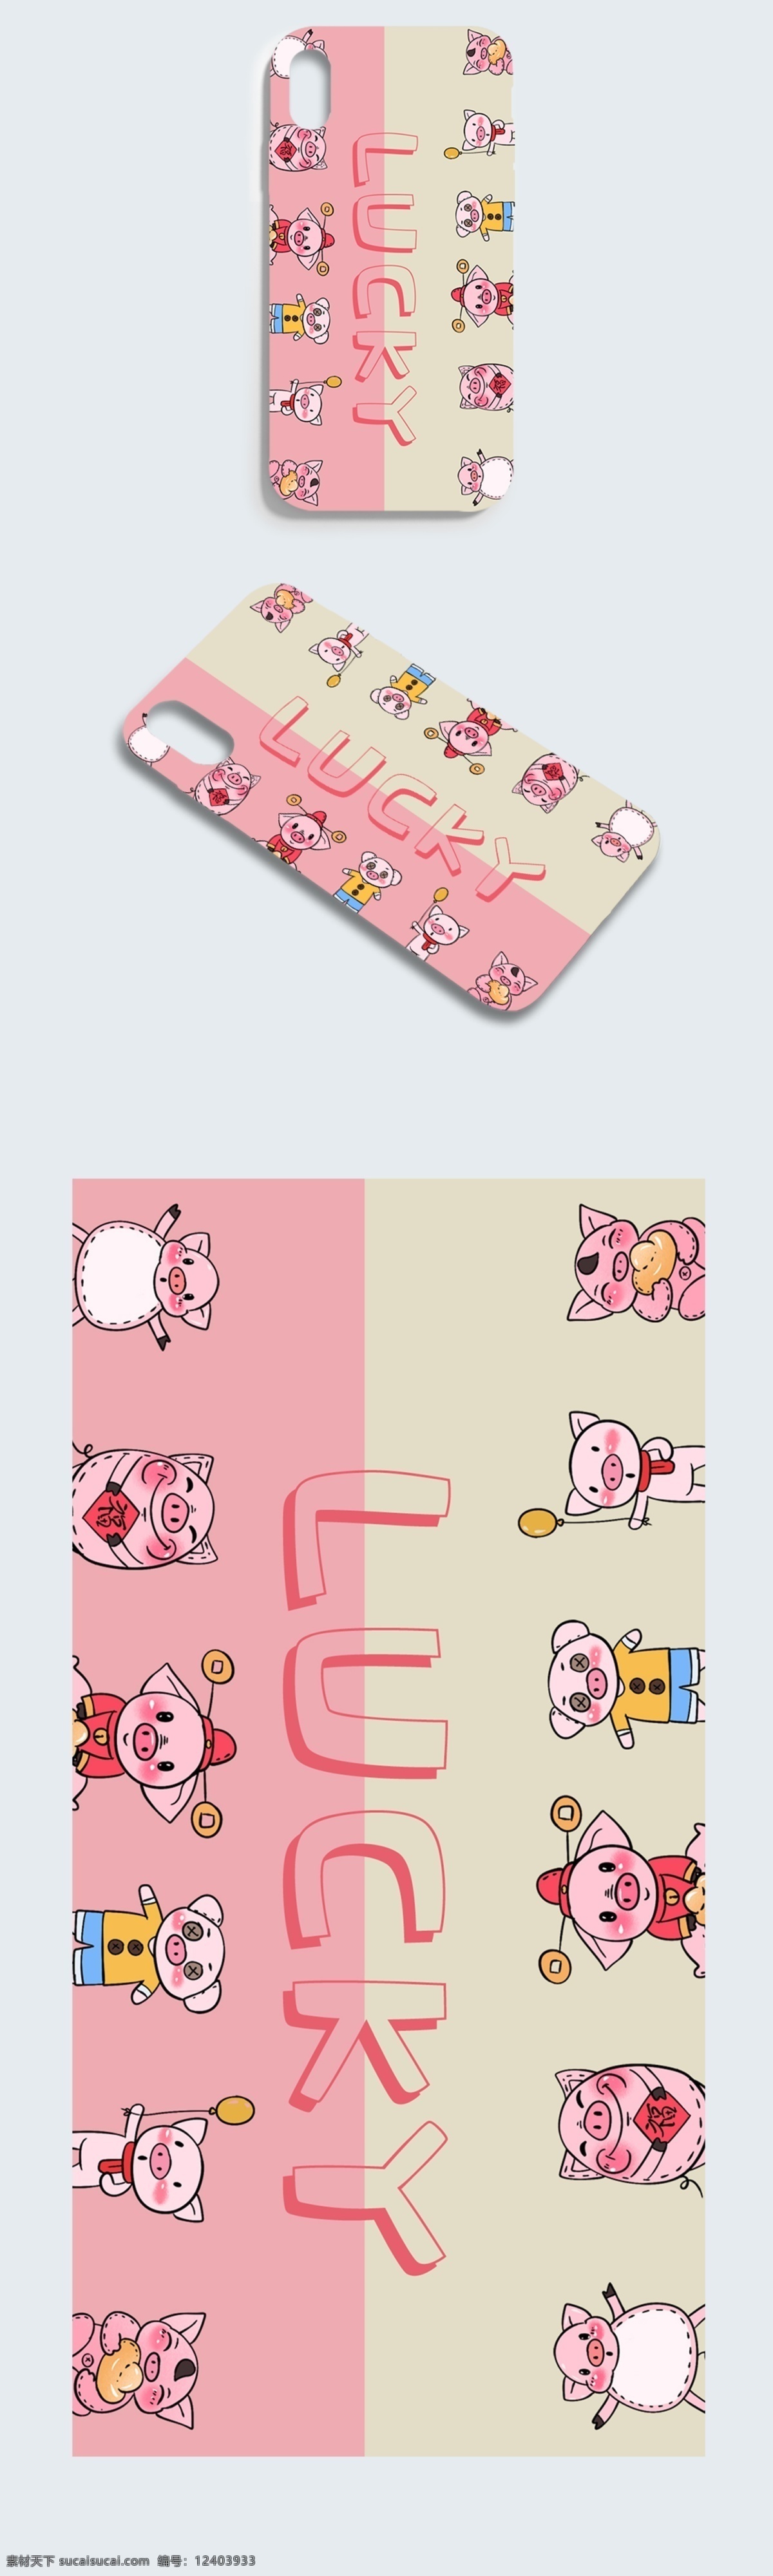 lucky 字母 手机壳 拼图背景 喜庆 猪 商业包装 粉色 小清新